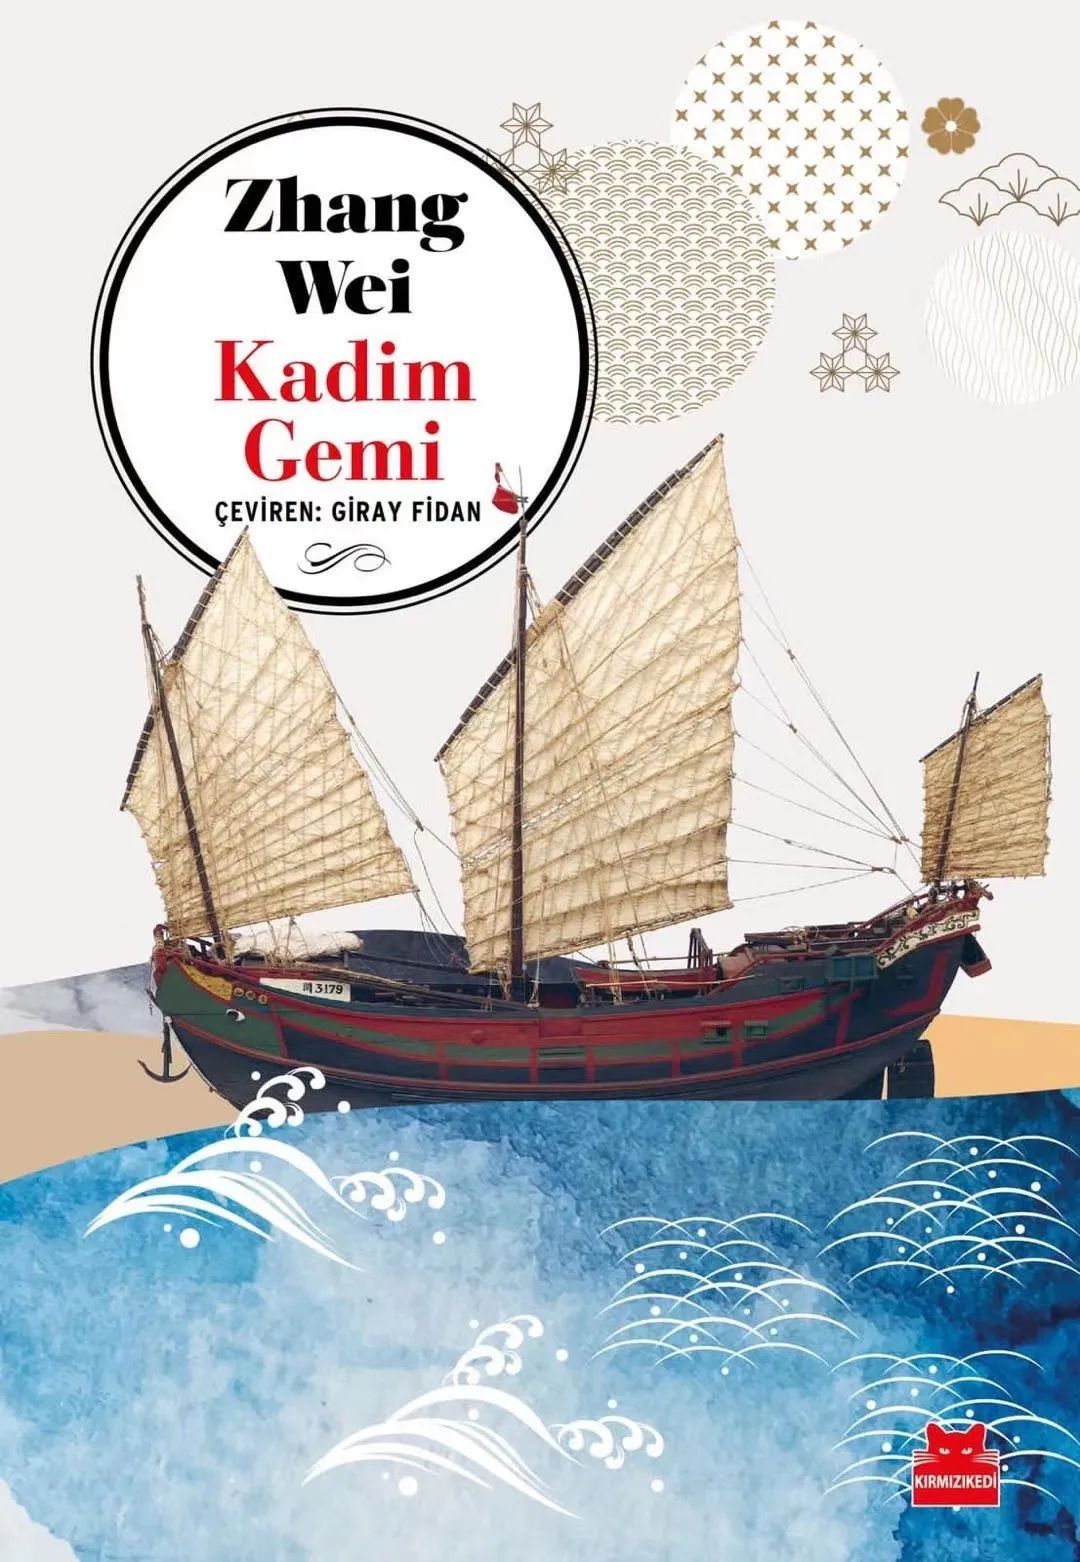 张炜《古船》丨土耳其语译本再版上市